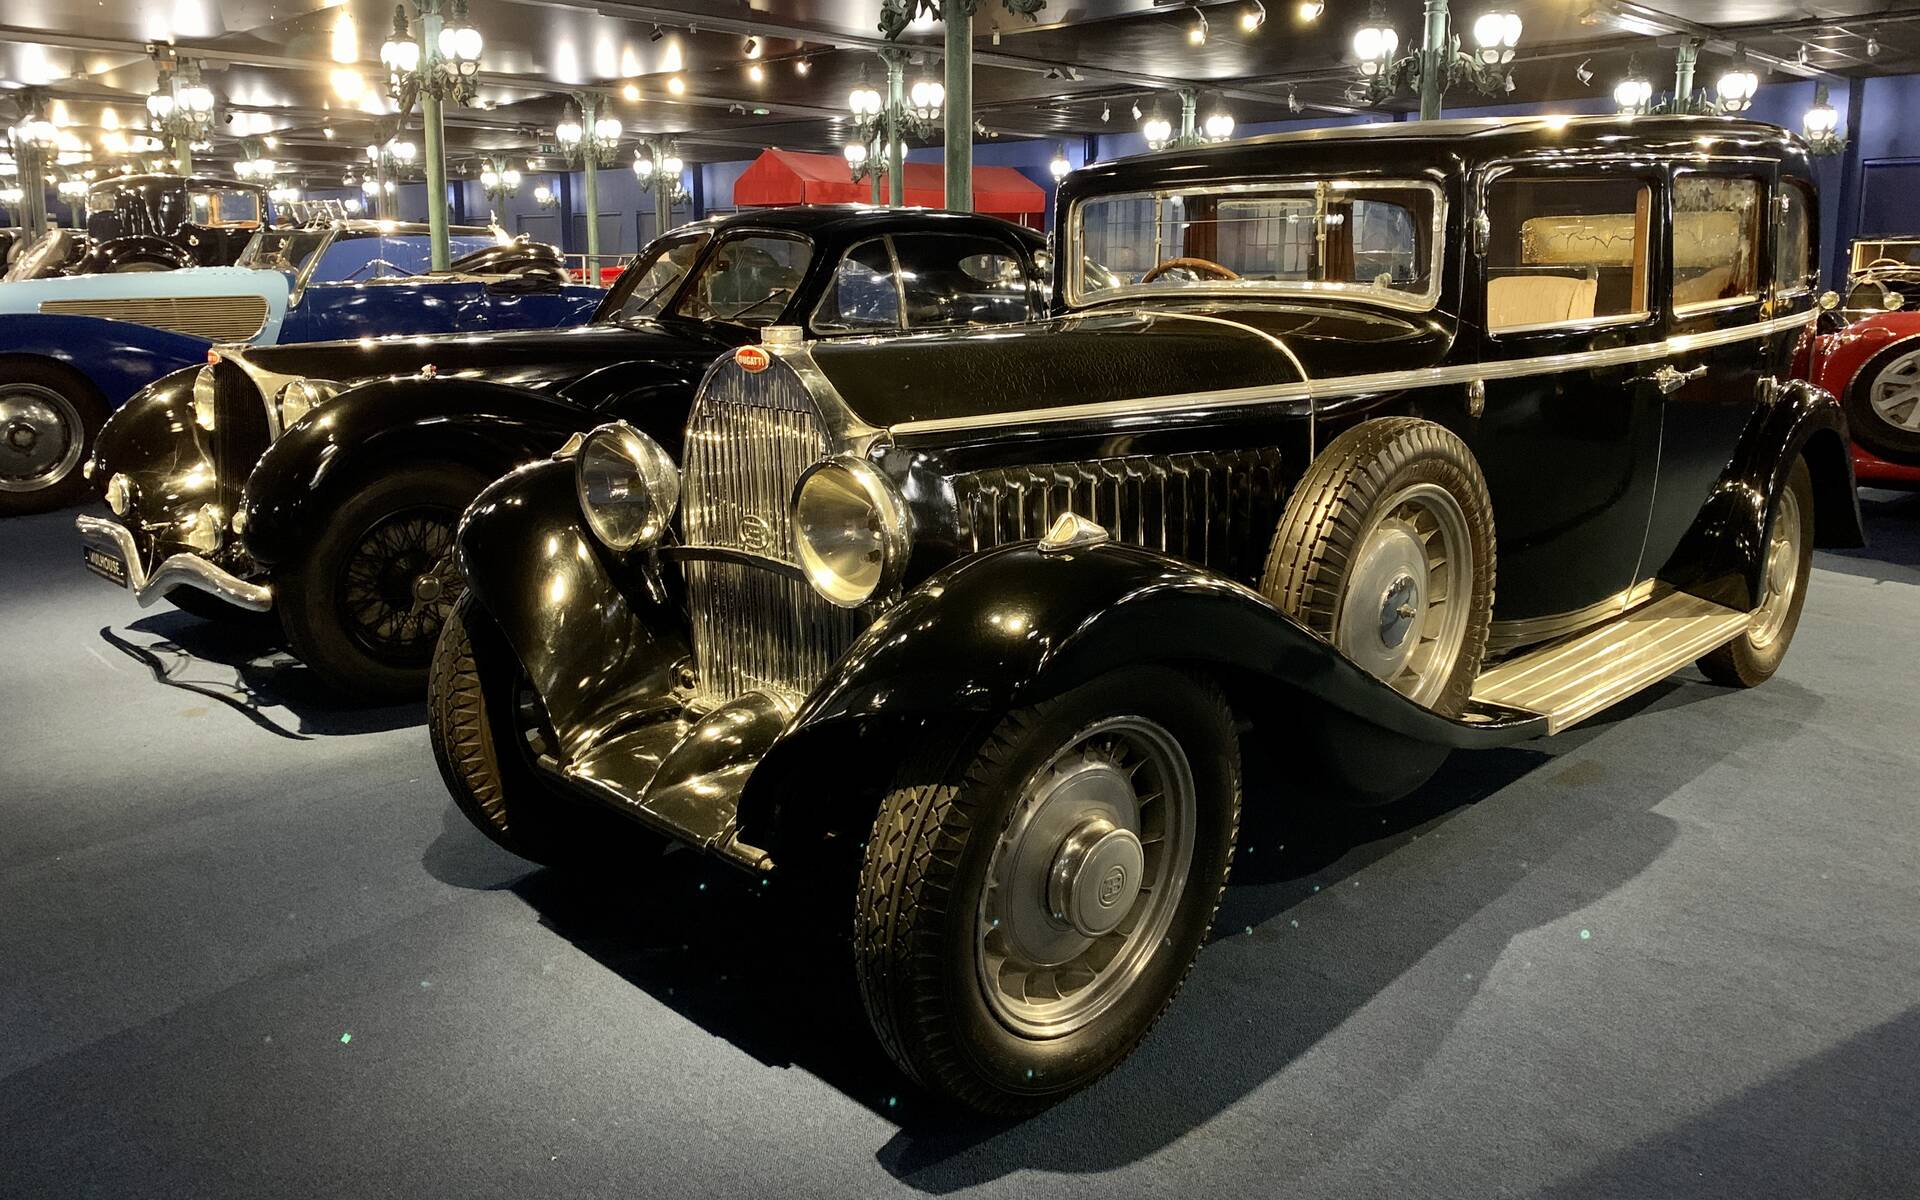 En photos : une centaine de Bugatti réunies dans un même musée 503096-en-photos-des-dizaines-de-bugatti-reunies-dans-un-meme-musee